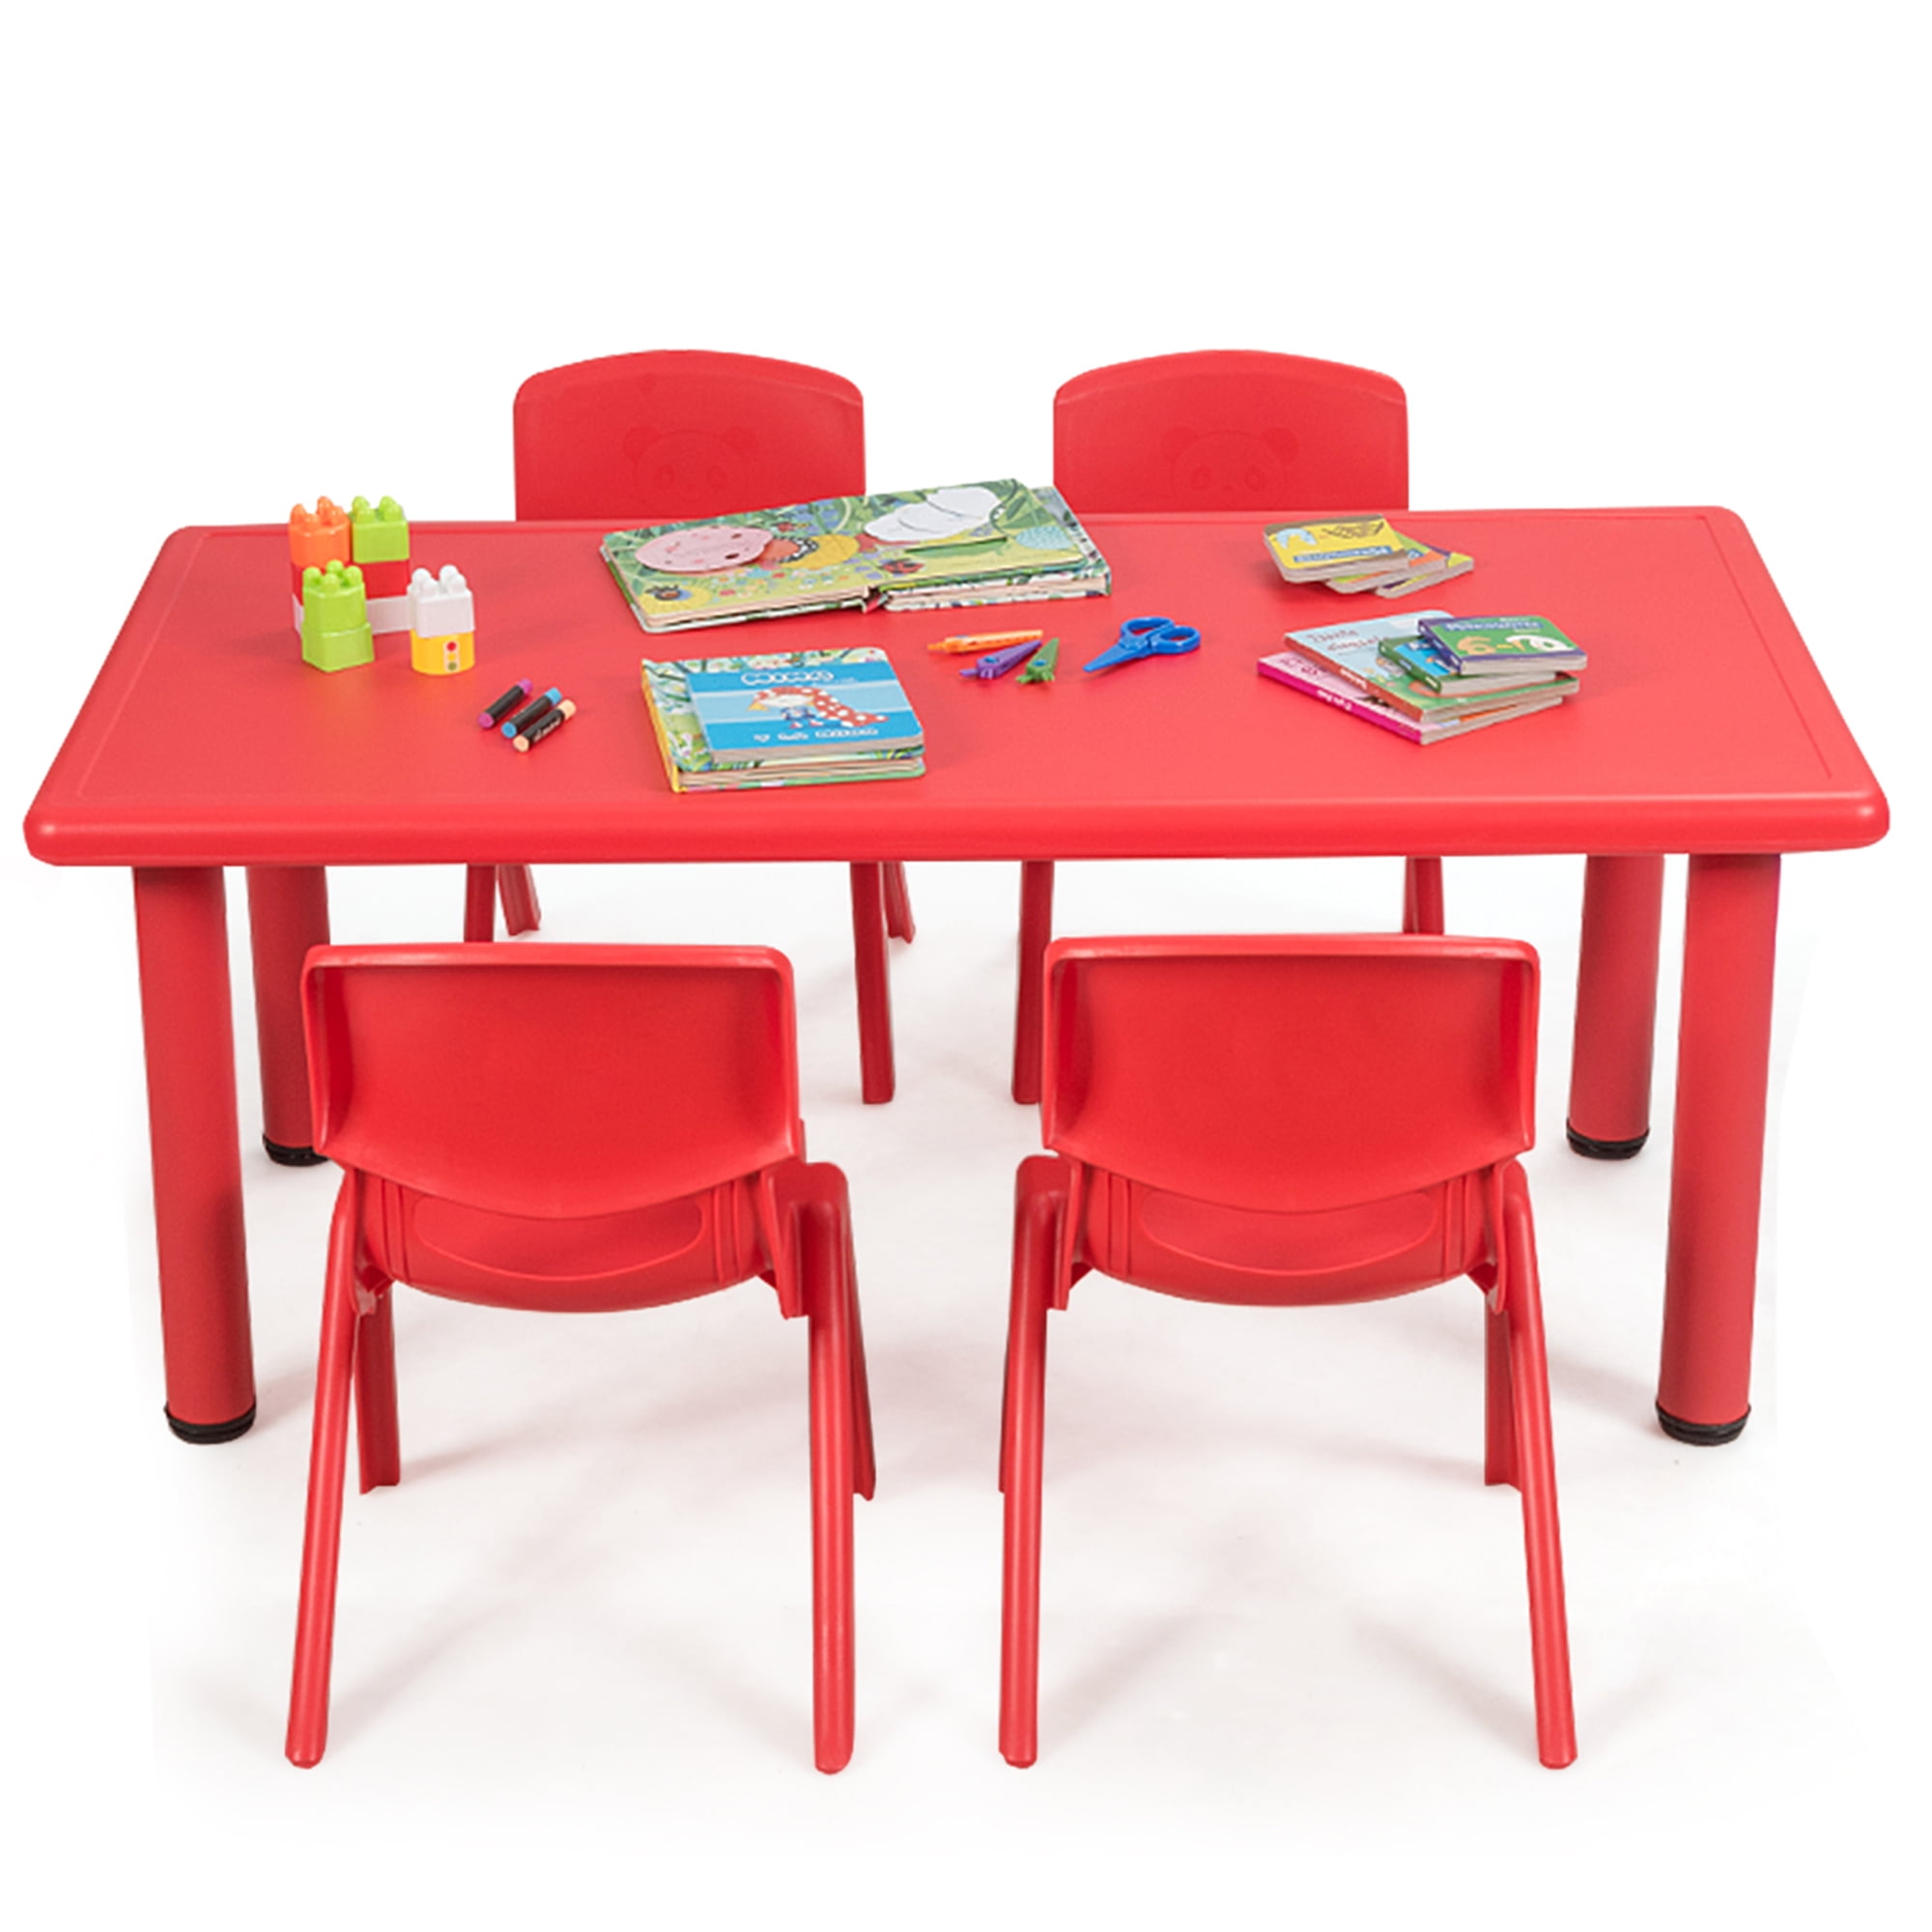 Plastic Play Activity Table and Chair Set Children's kids Indoor Desk outdoor